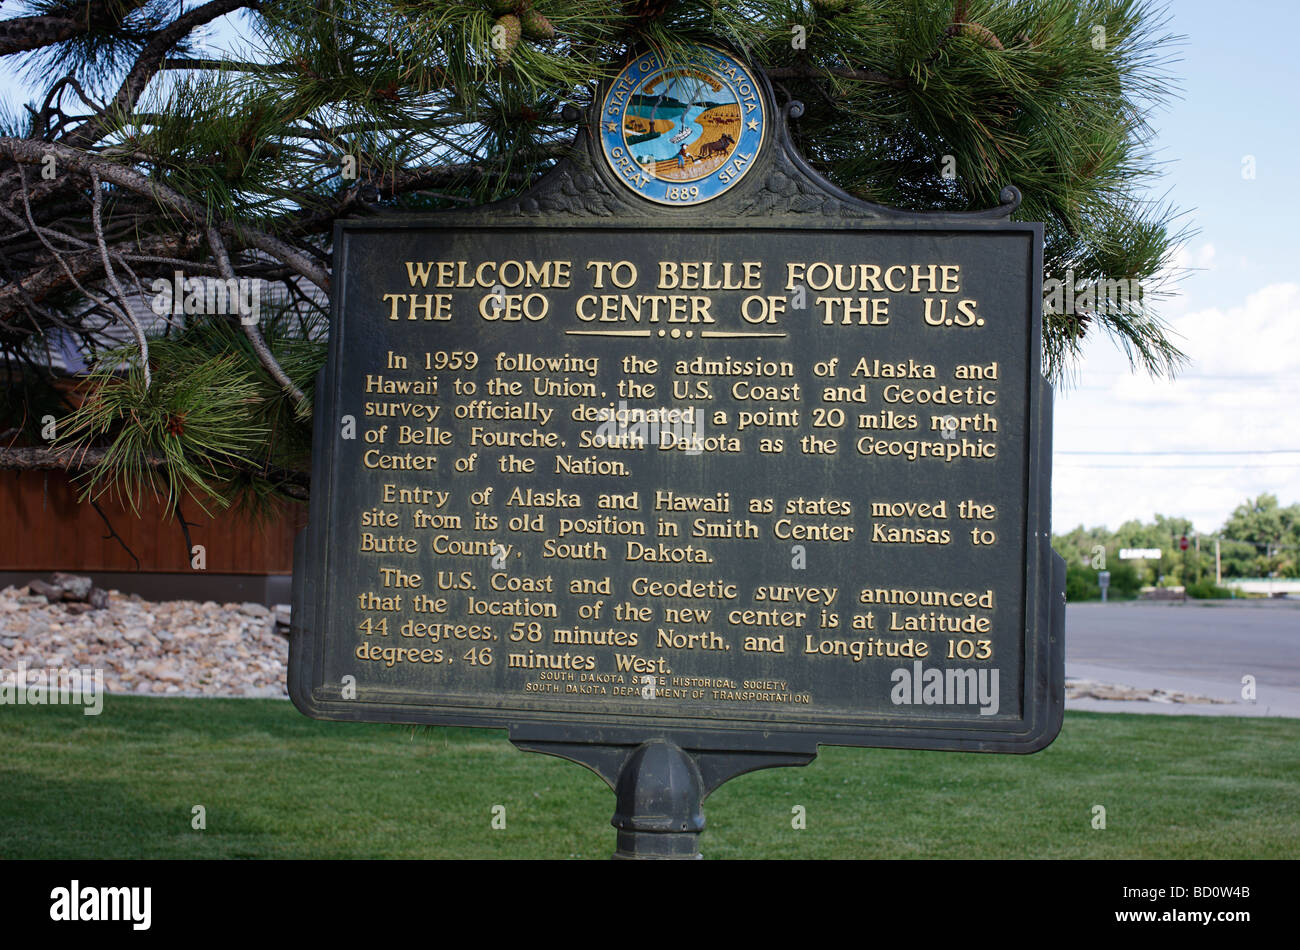 Ein Zeichen in Belle Fourche, South Dakota, kennzeichnet es als das geographische Zentrum der Vereinigten Staaten. Stockfoto